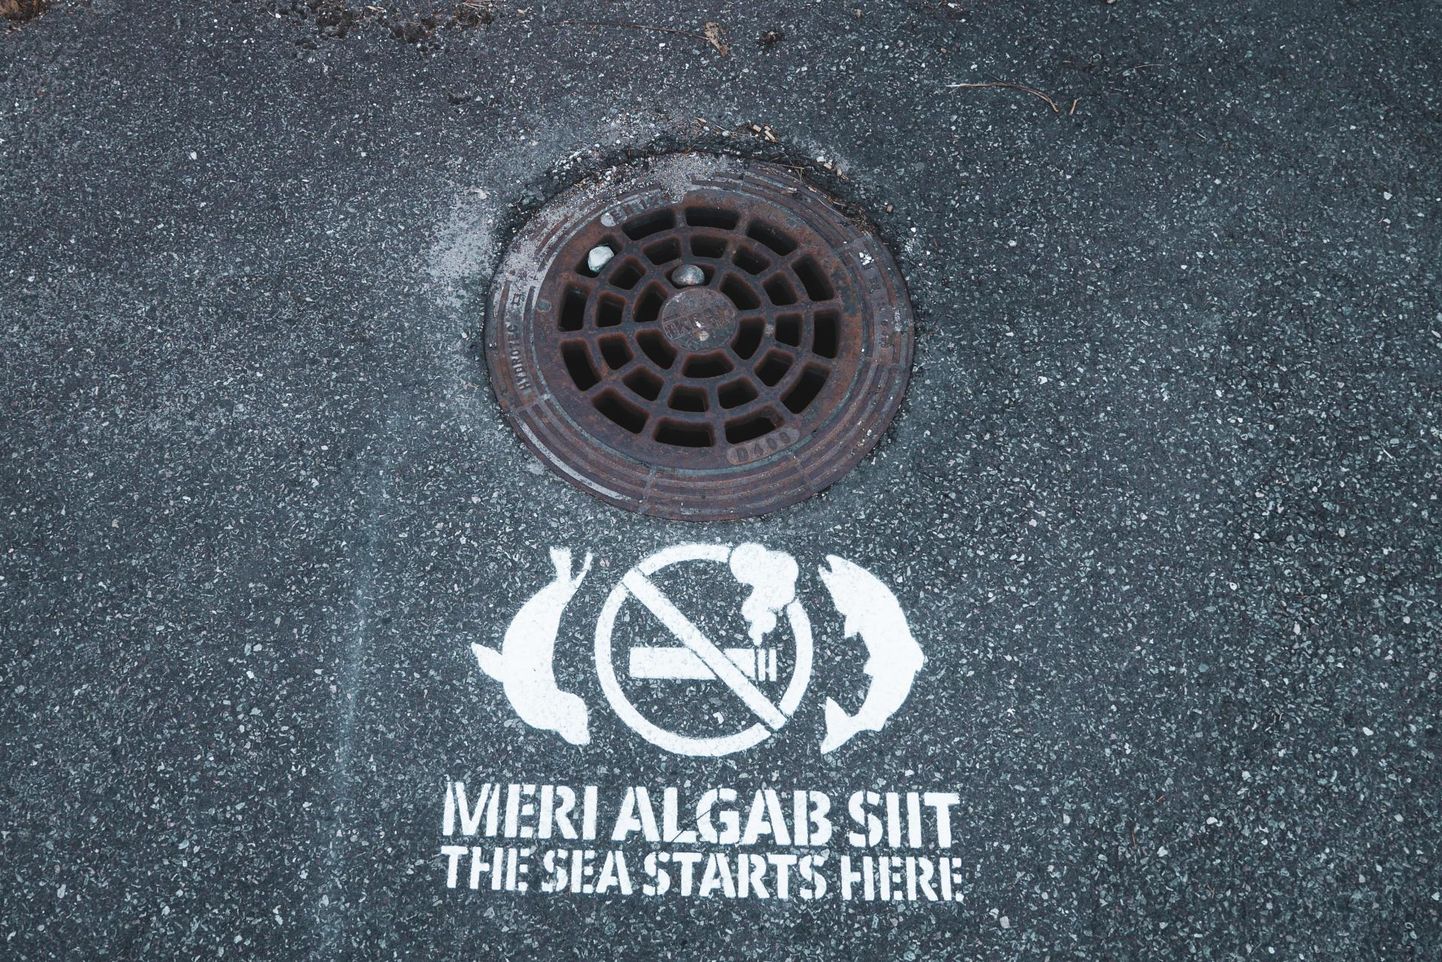 Kampaania "Meri algab siit" raames märgistati Pärnus 100 kanalisatsioonikaevu luuki. 